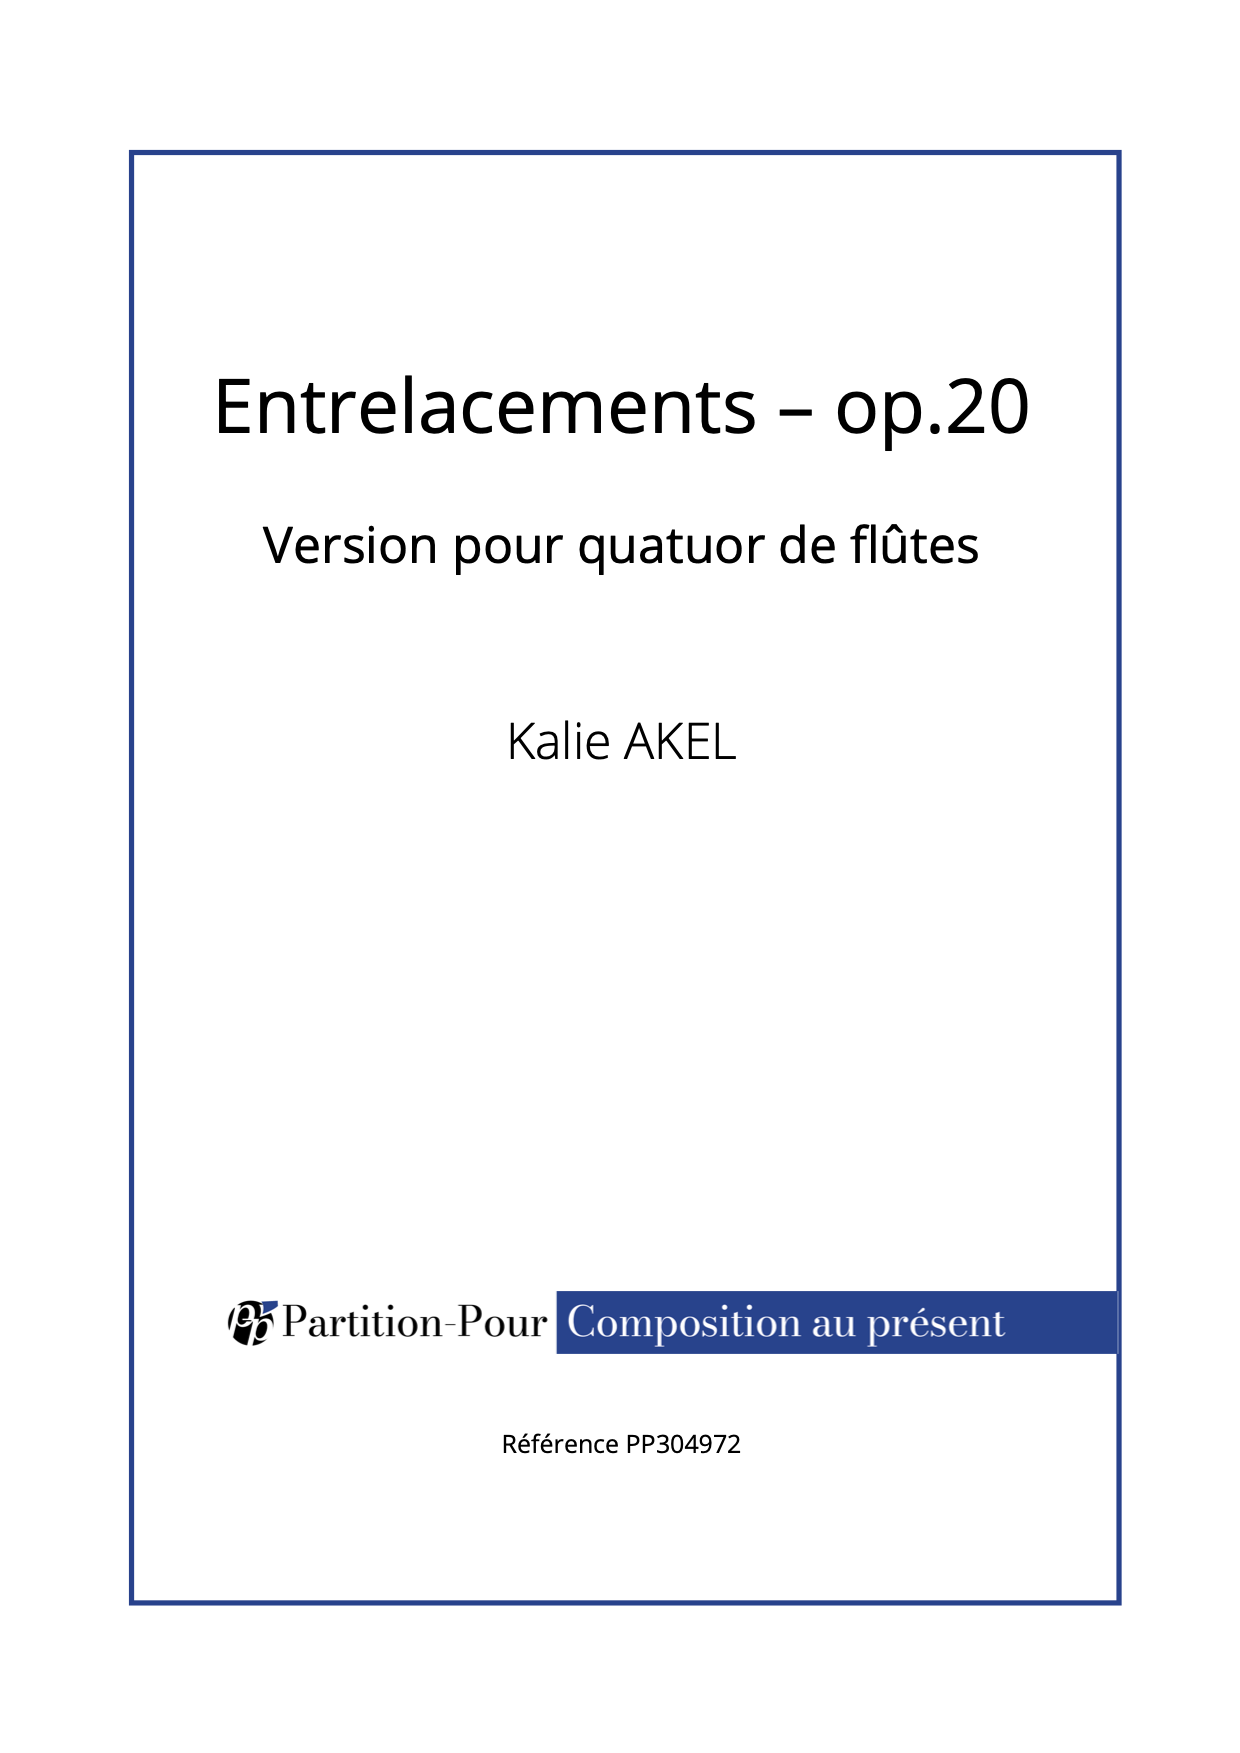 PP304972 - Akel K - Entrelacements op.20 - 4 flûtes -présentation